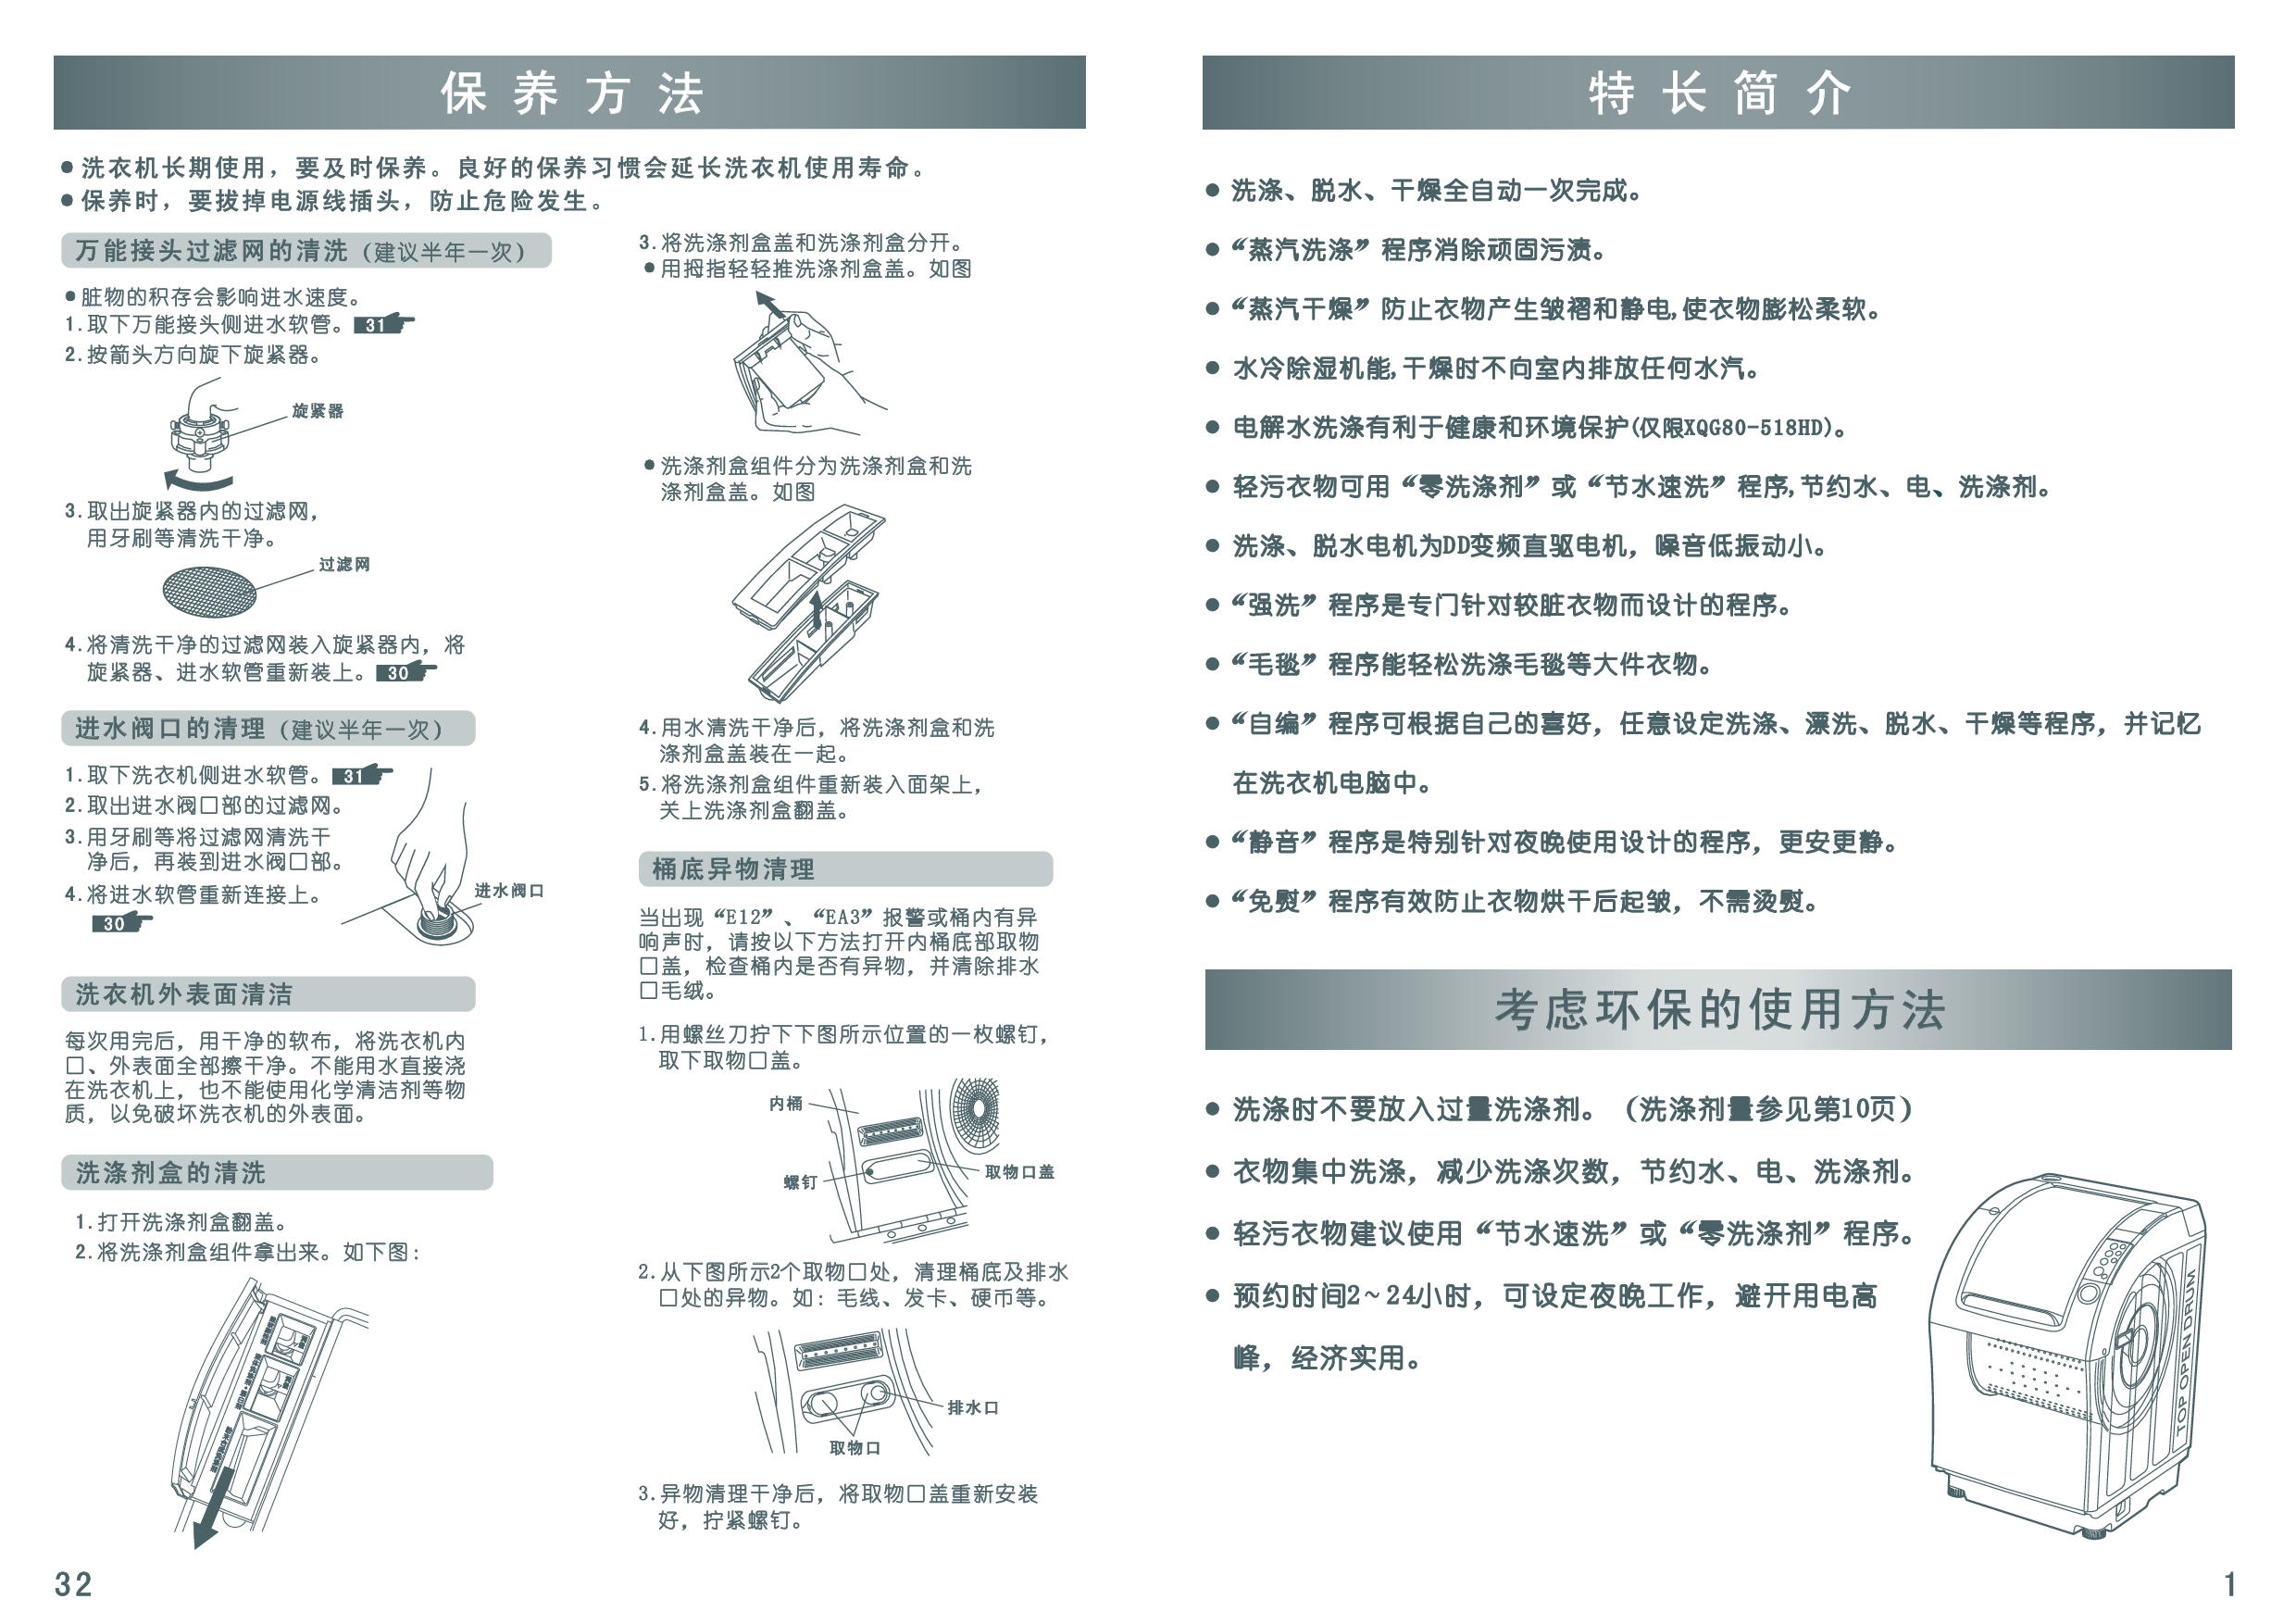 三洋 Sanyo XQB80-518HD 用户指南 第2页